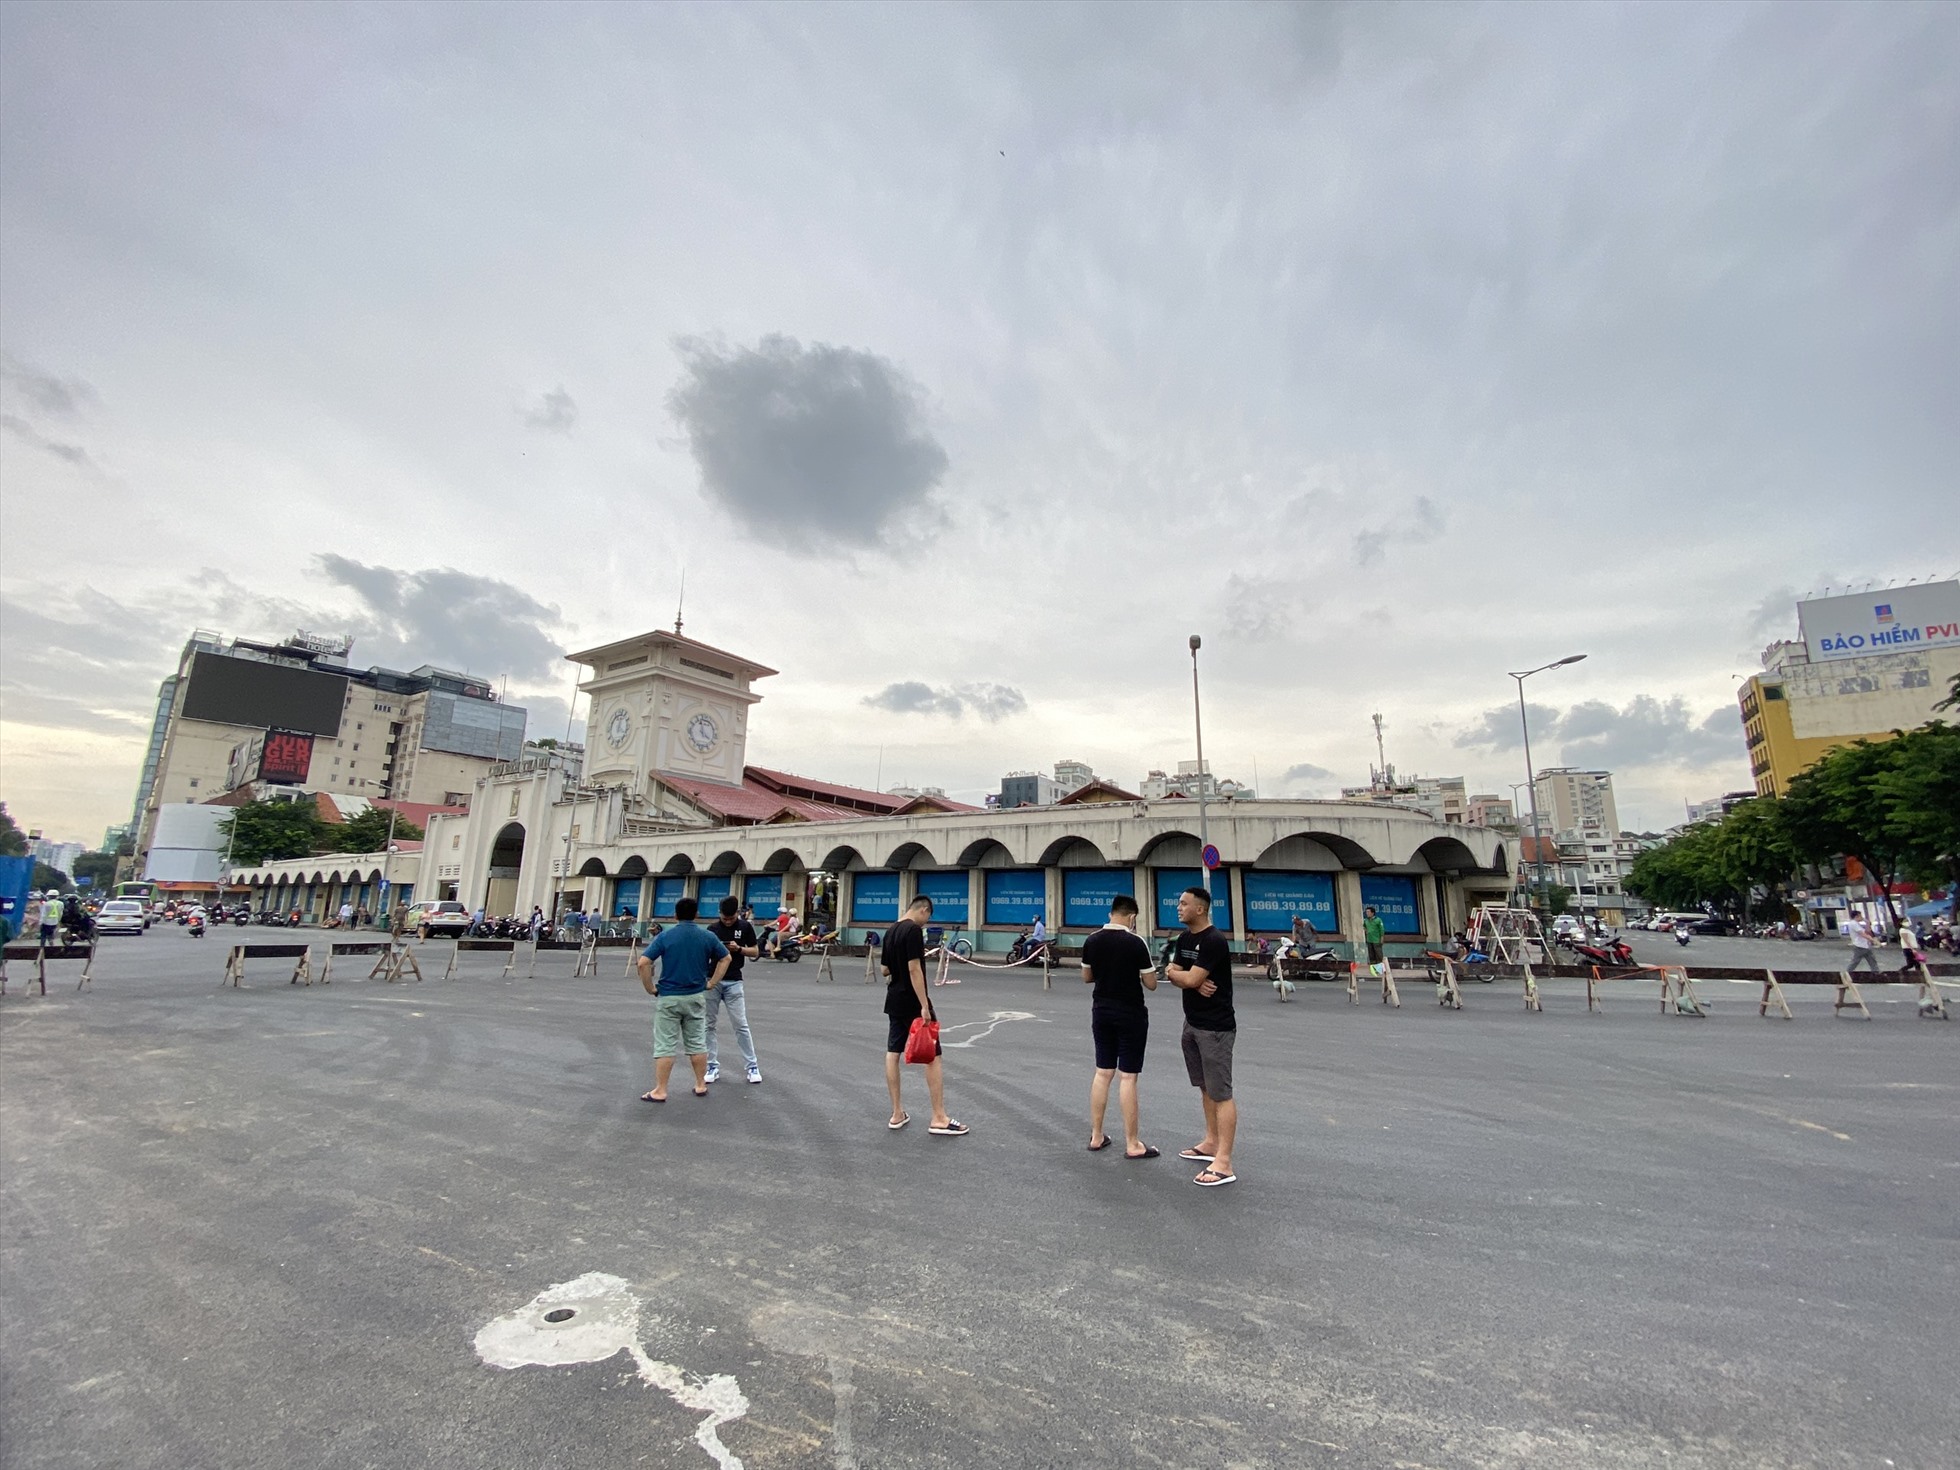 Vừa qua, Sở Giao thông vận tải TP.HCM đã trình UBND TP đề án mở thêm phố đi bộ tại 22 tuyến đường trung tâm. Trong đó, giai đoạn 1 từ năm 2022 - 2023, phố đi bộ Lê Lợi sẽ mở từ đường Nguyễn Huệ đến vòng xoay Quách Thị Trang.